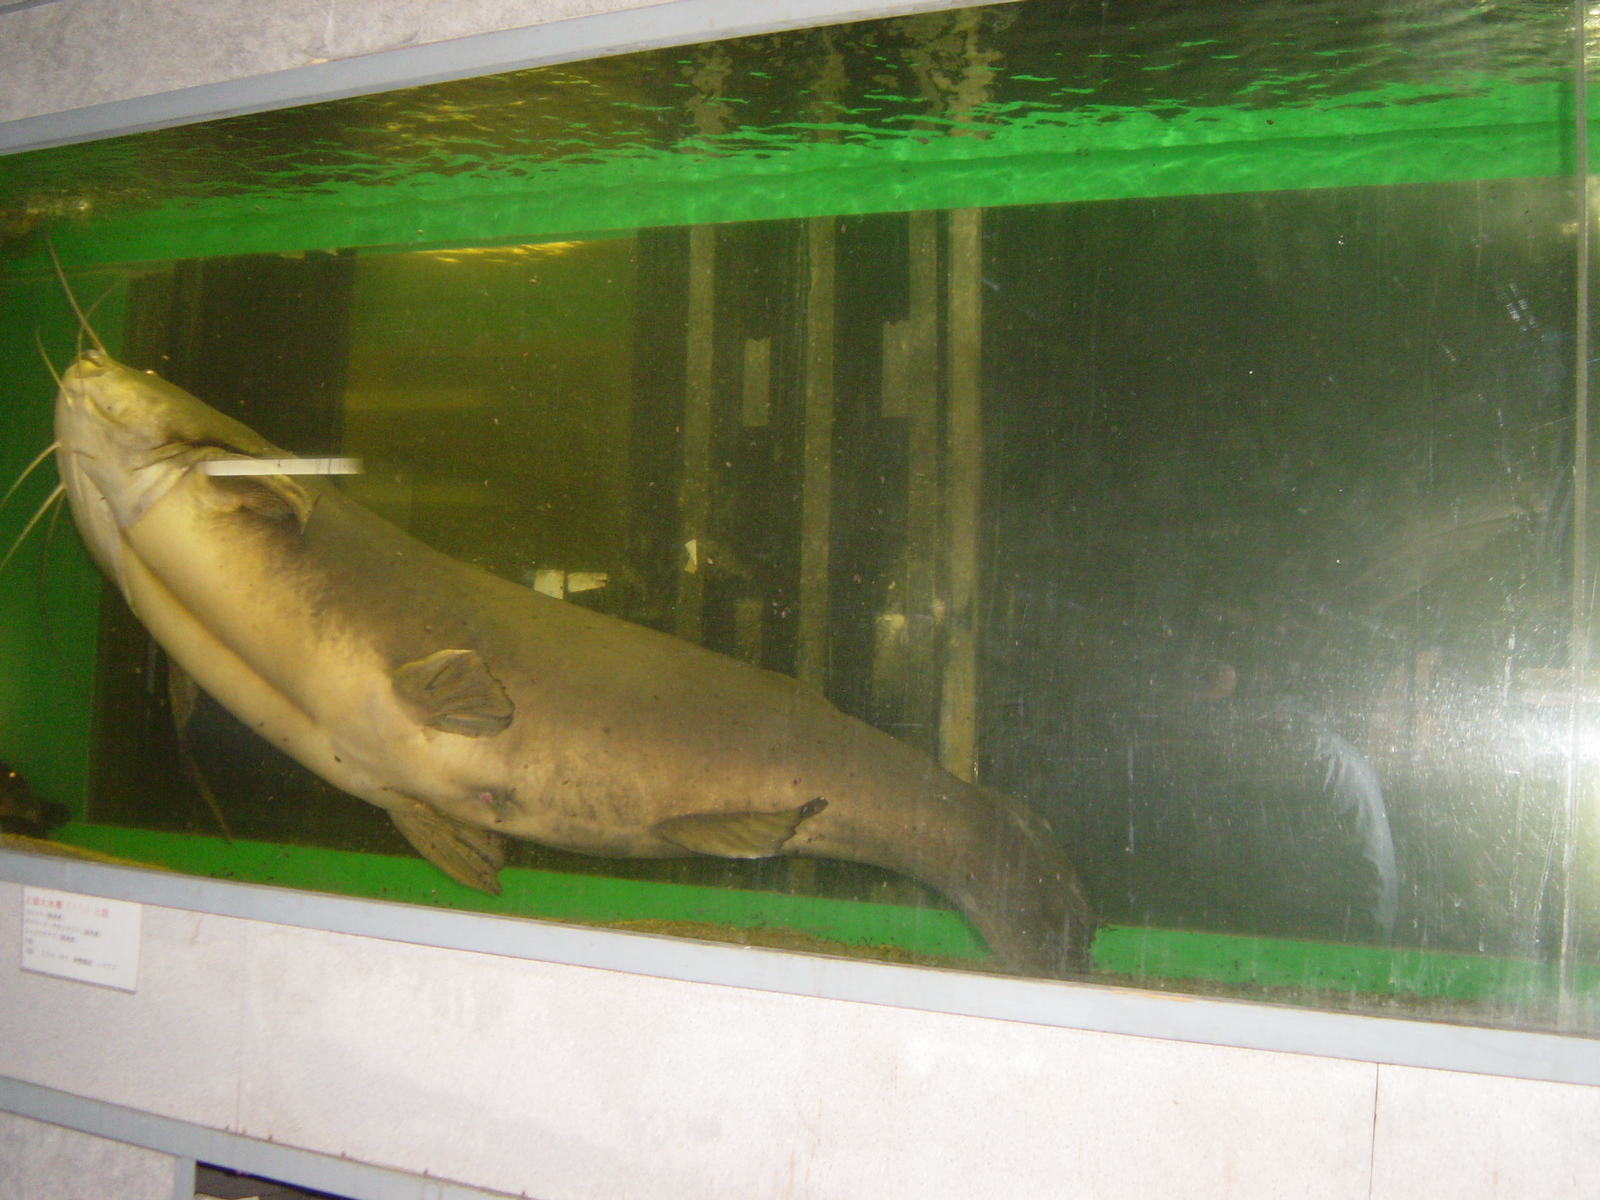 日本で始めての水族館 レストランで 巨大魚たちに会える 土浦 茨城県 の旅行記 ブログ By ひよこママさん フォートラベル